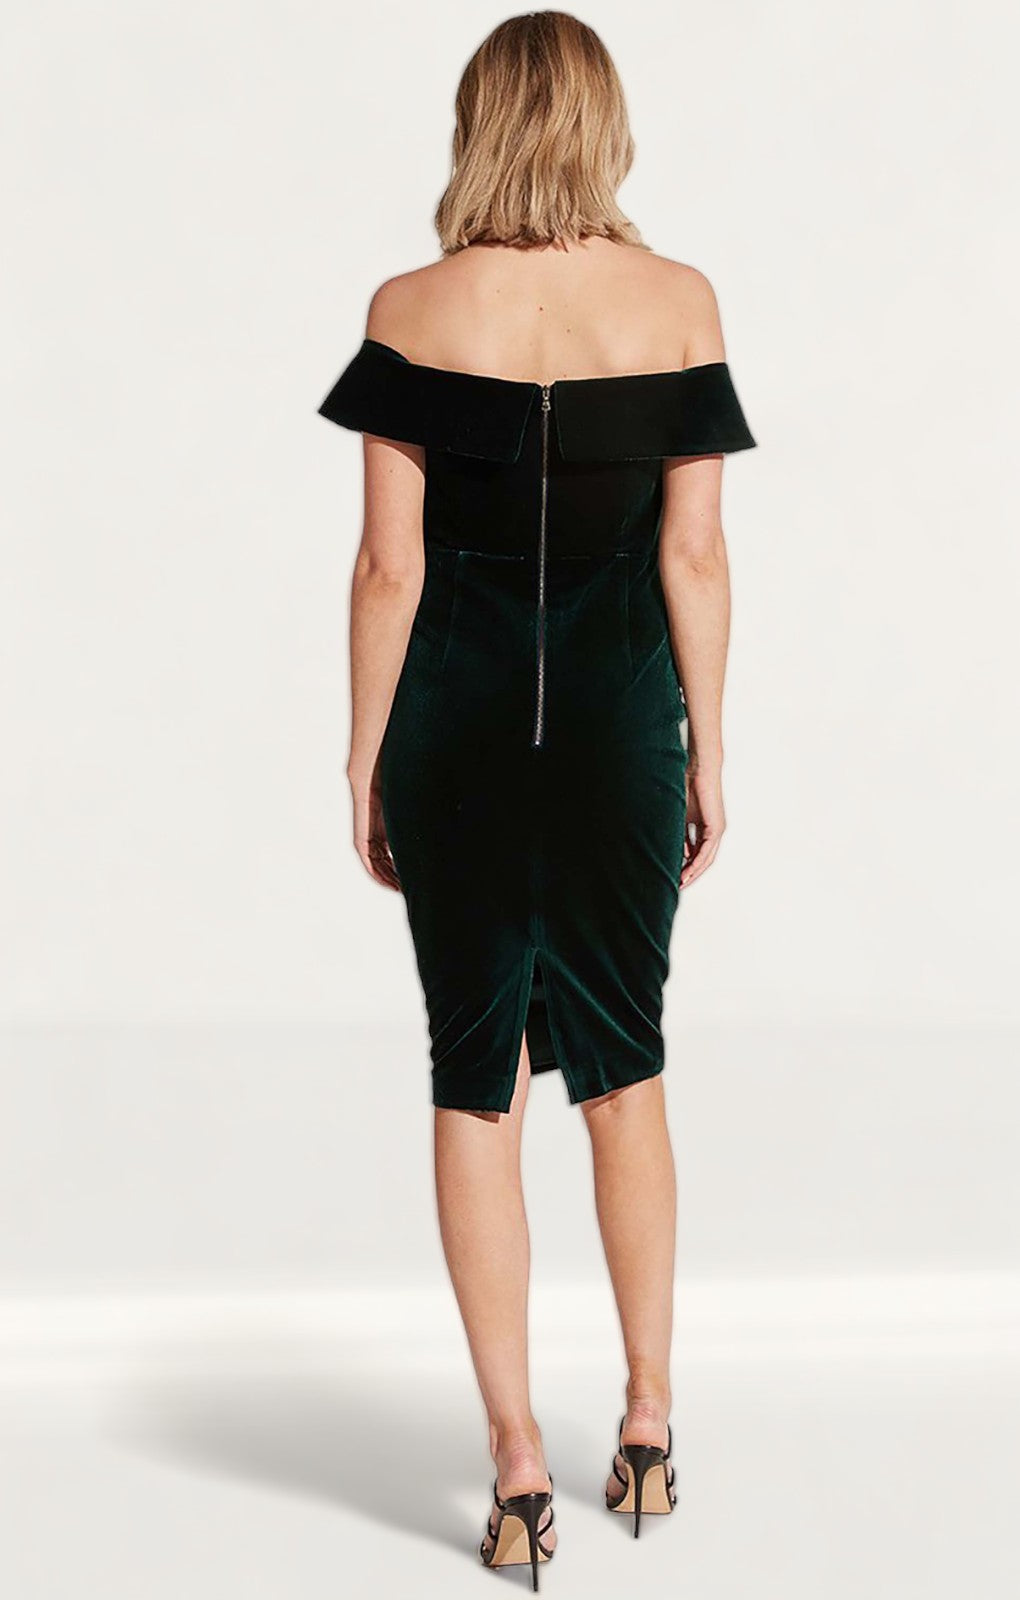 Bardot Bella Velvet Dark Green Dress product image